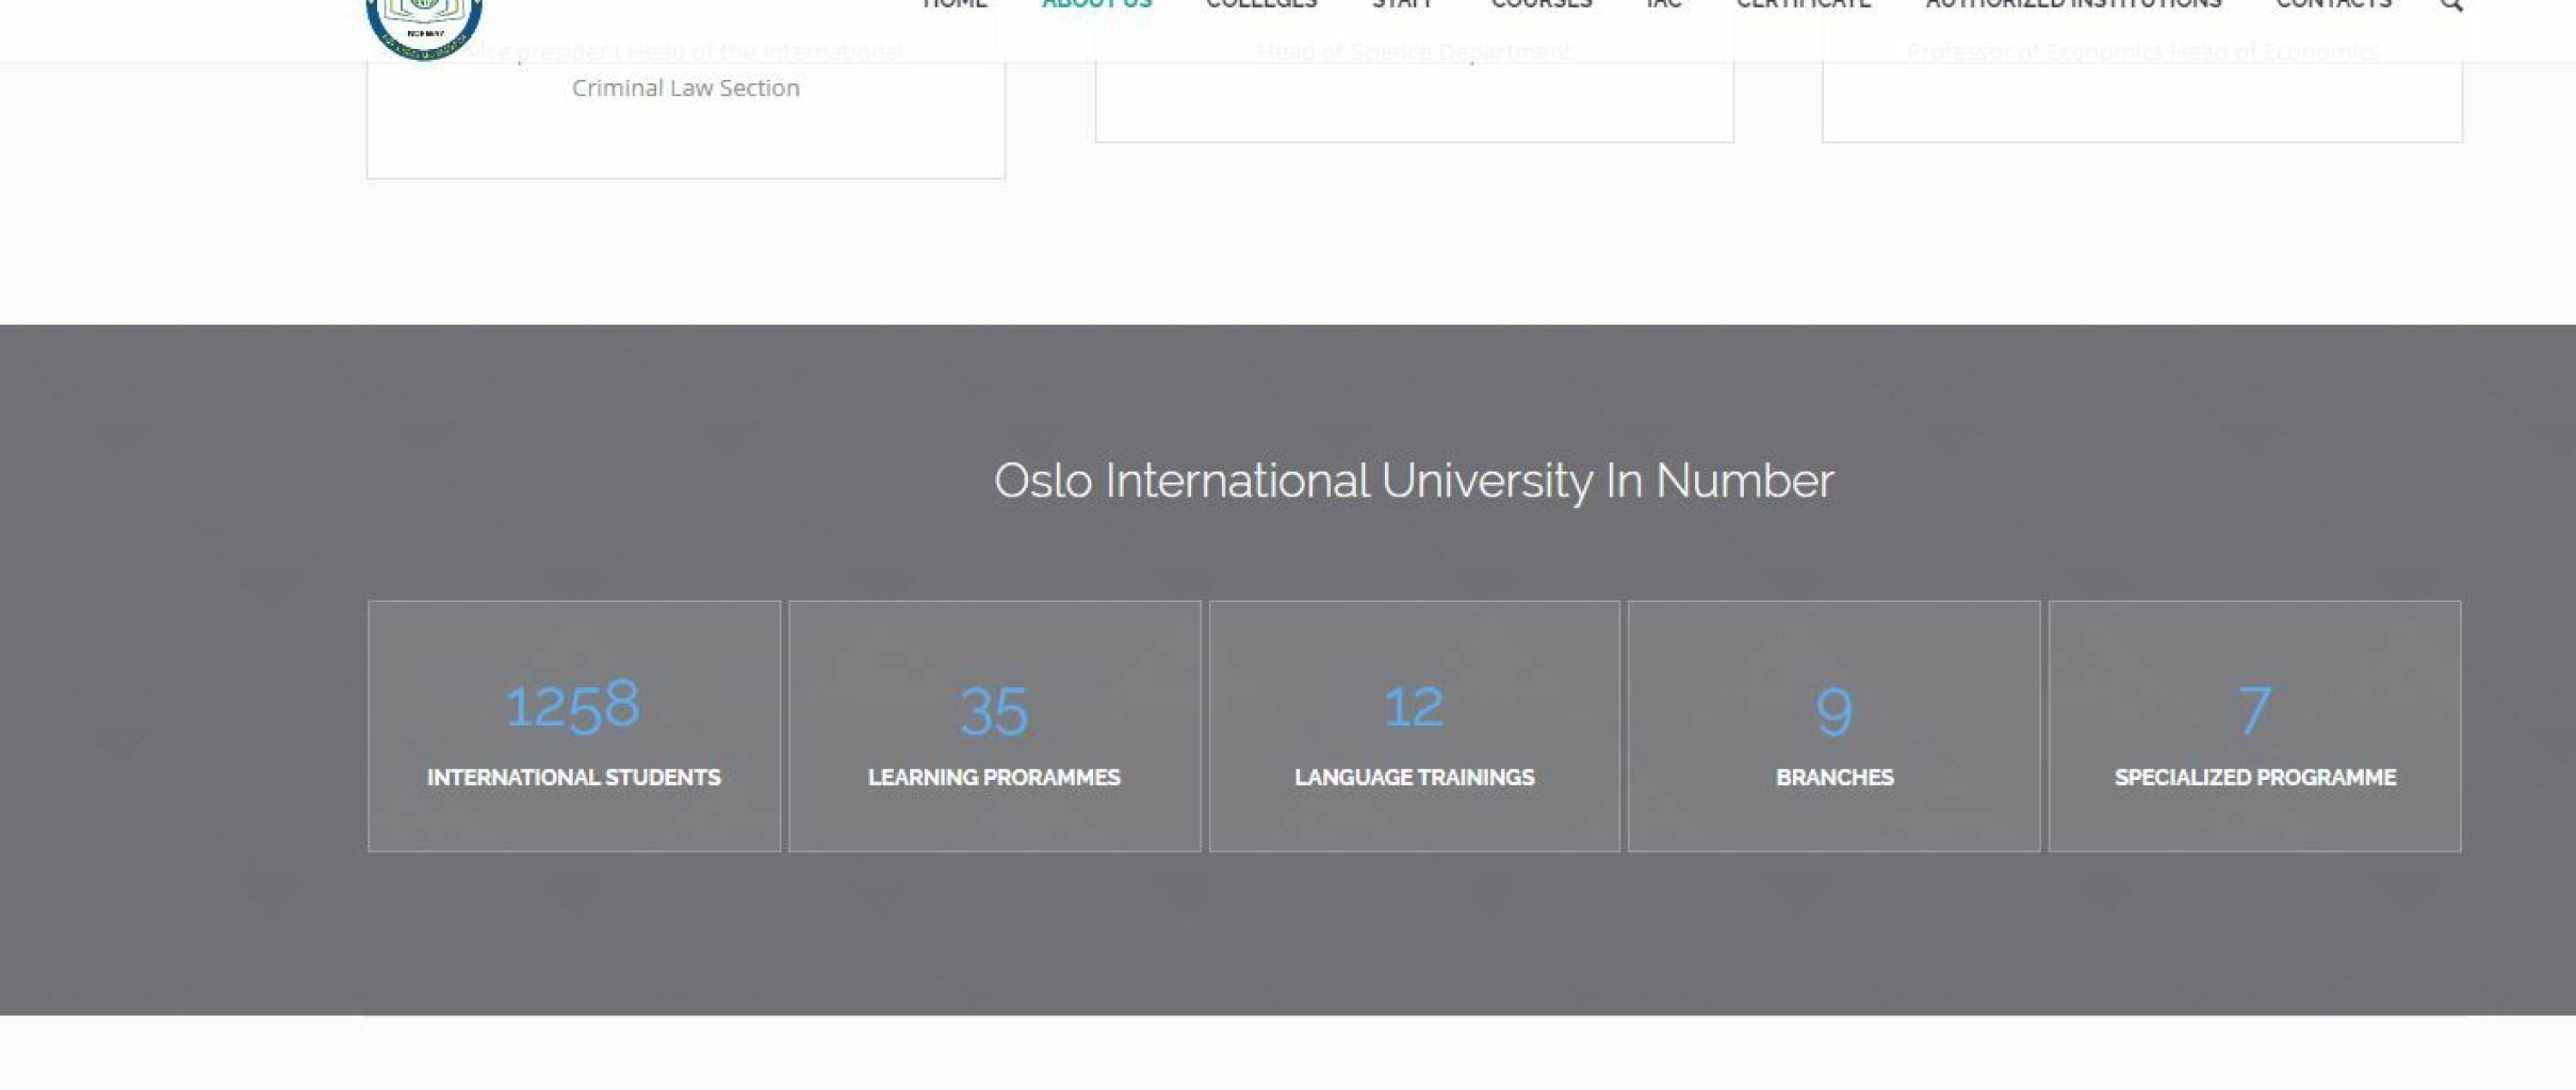 1258 studenter var status for universitetet, ifølge egne nettsider